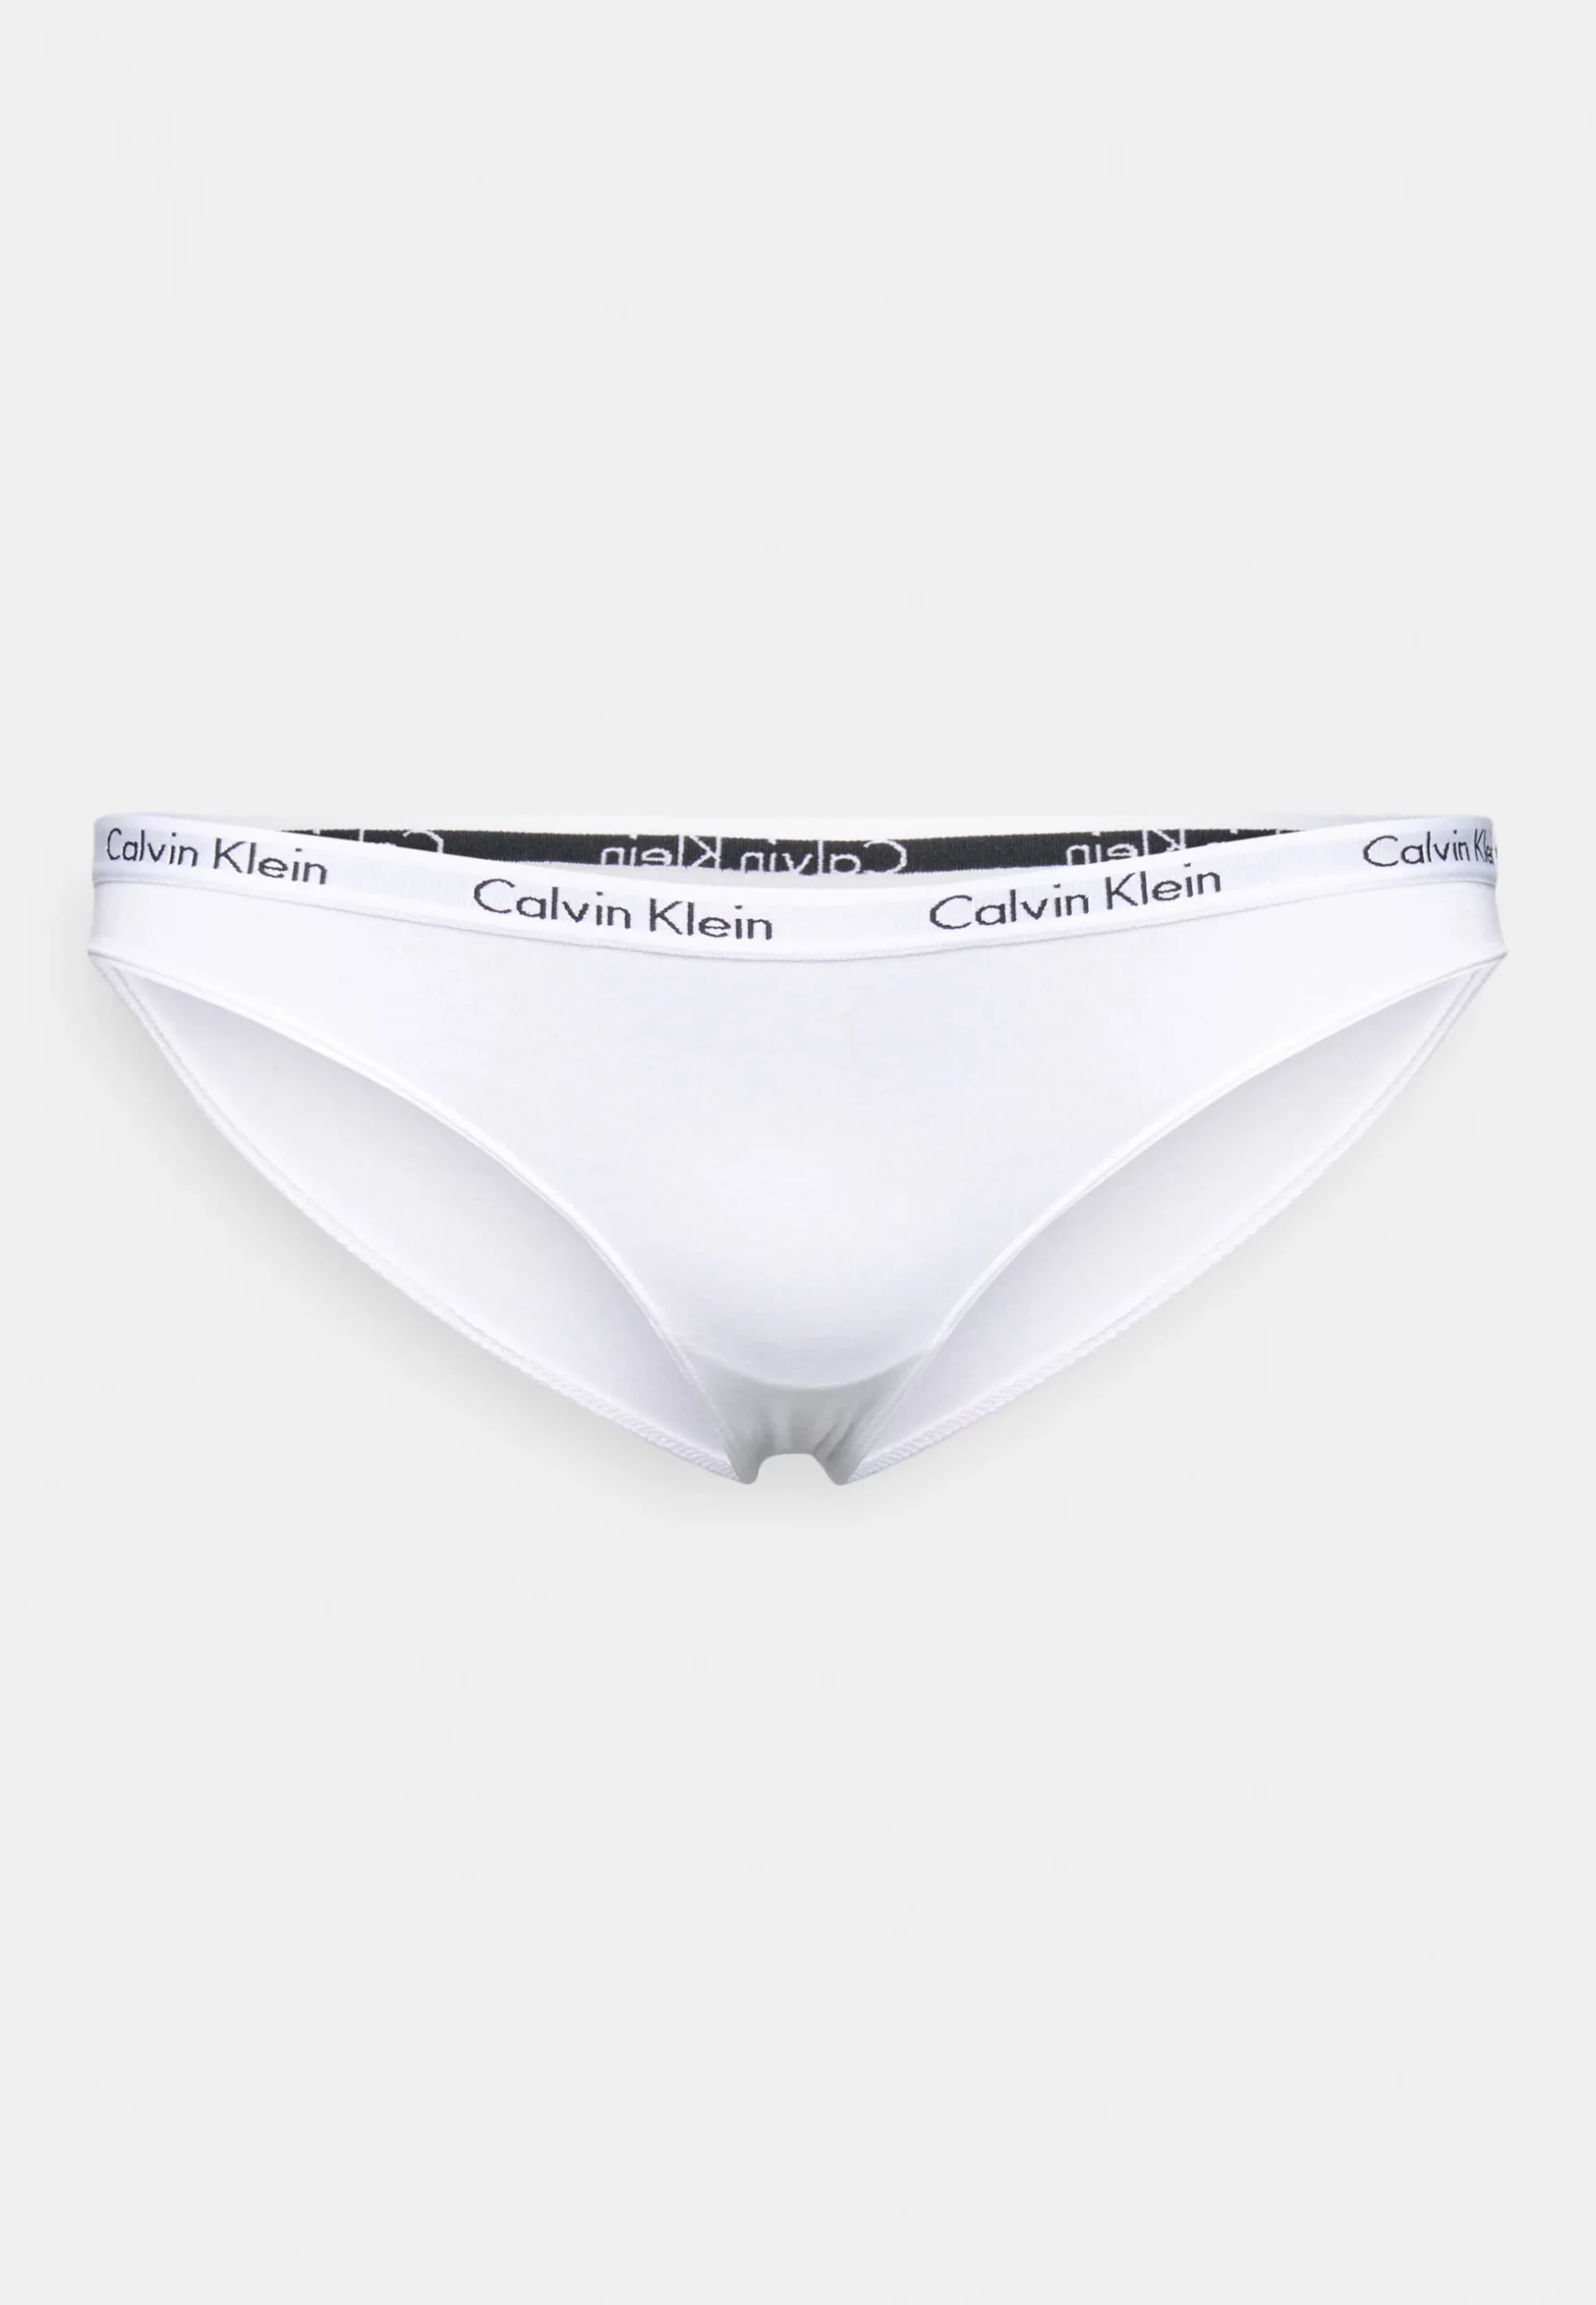 Calvin Klein Woman 3-Pack - Fashion